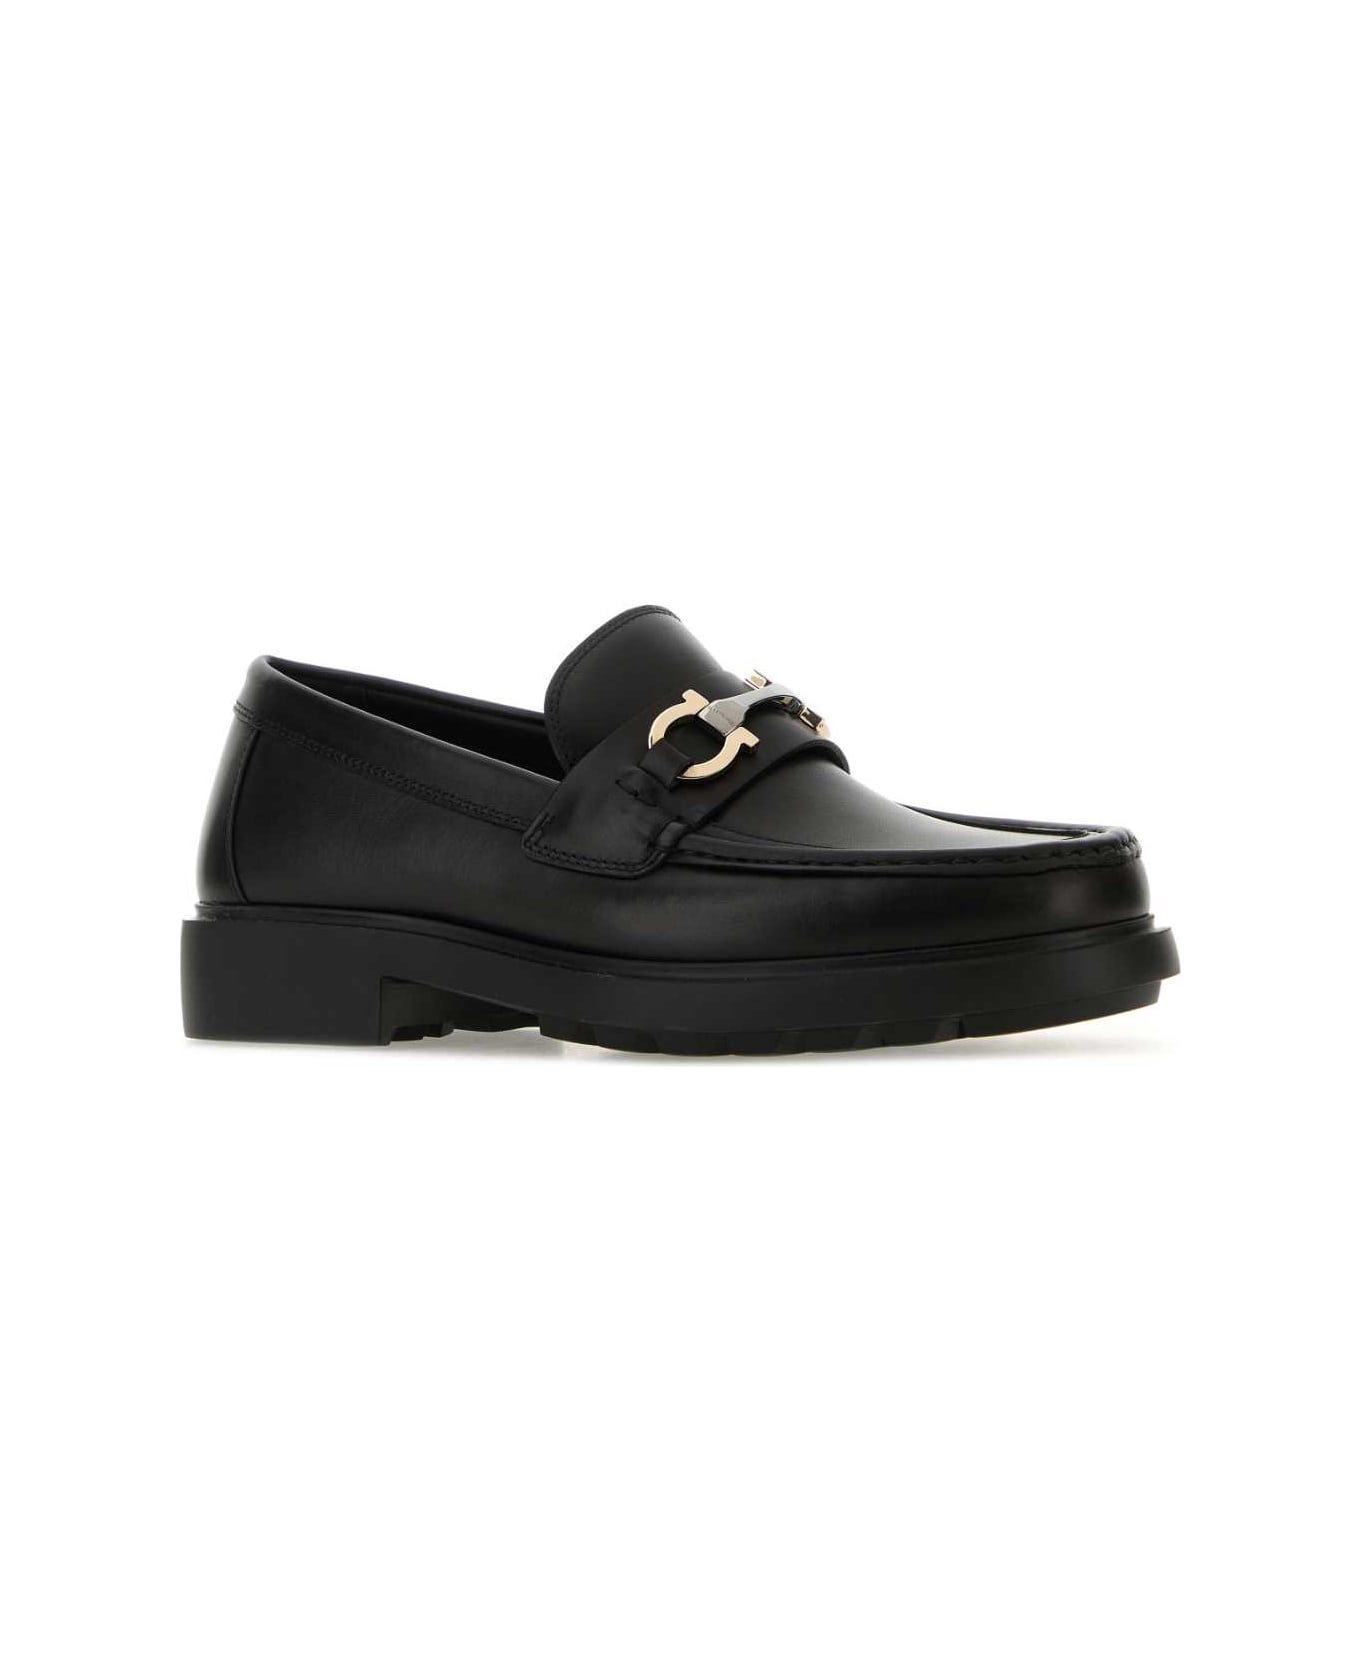 Ferragamo Black Leather Duglas Loafers - NERONERONERO